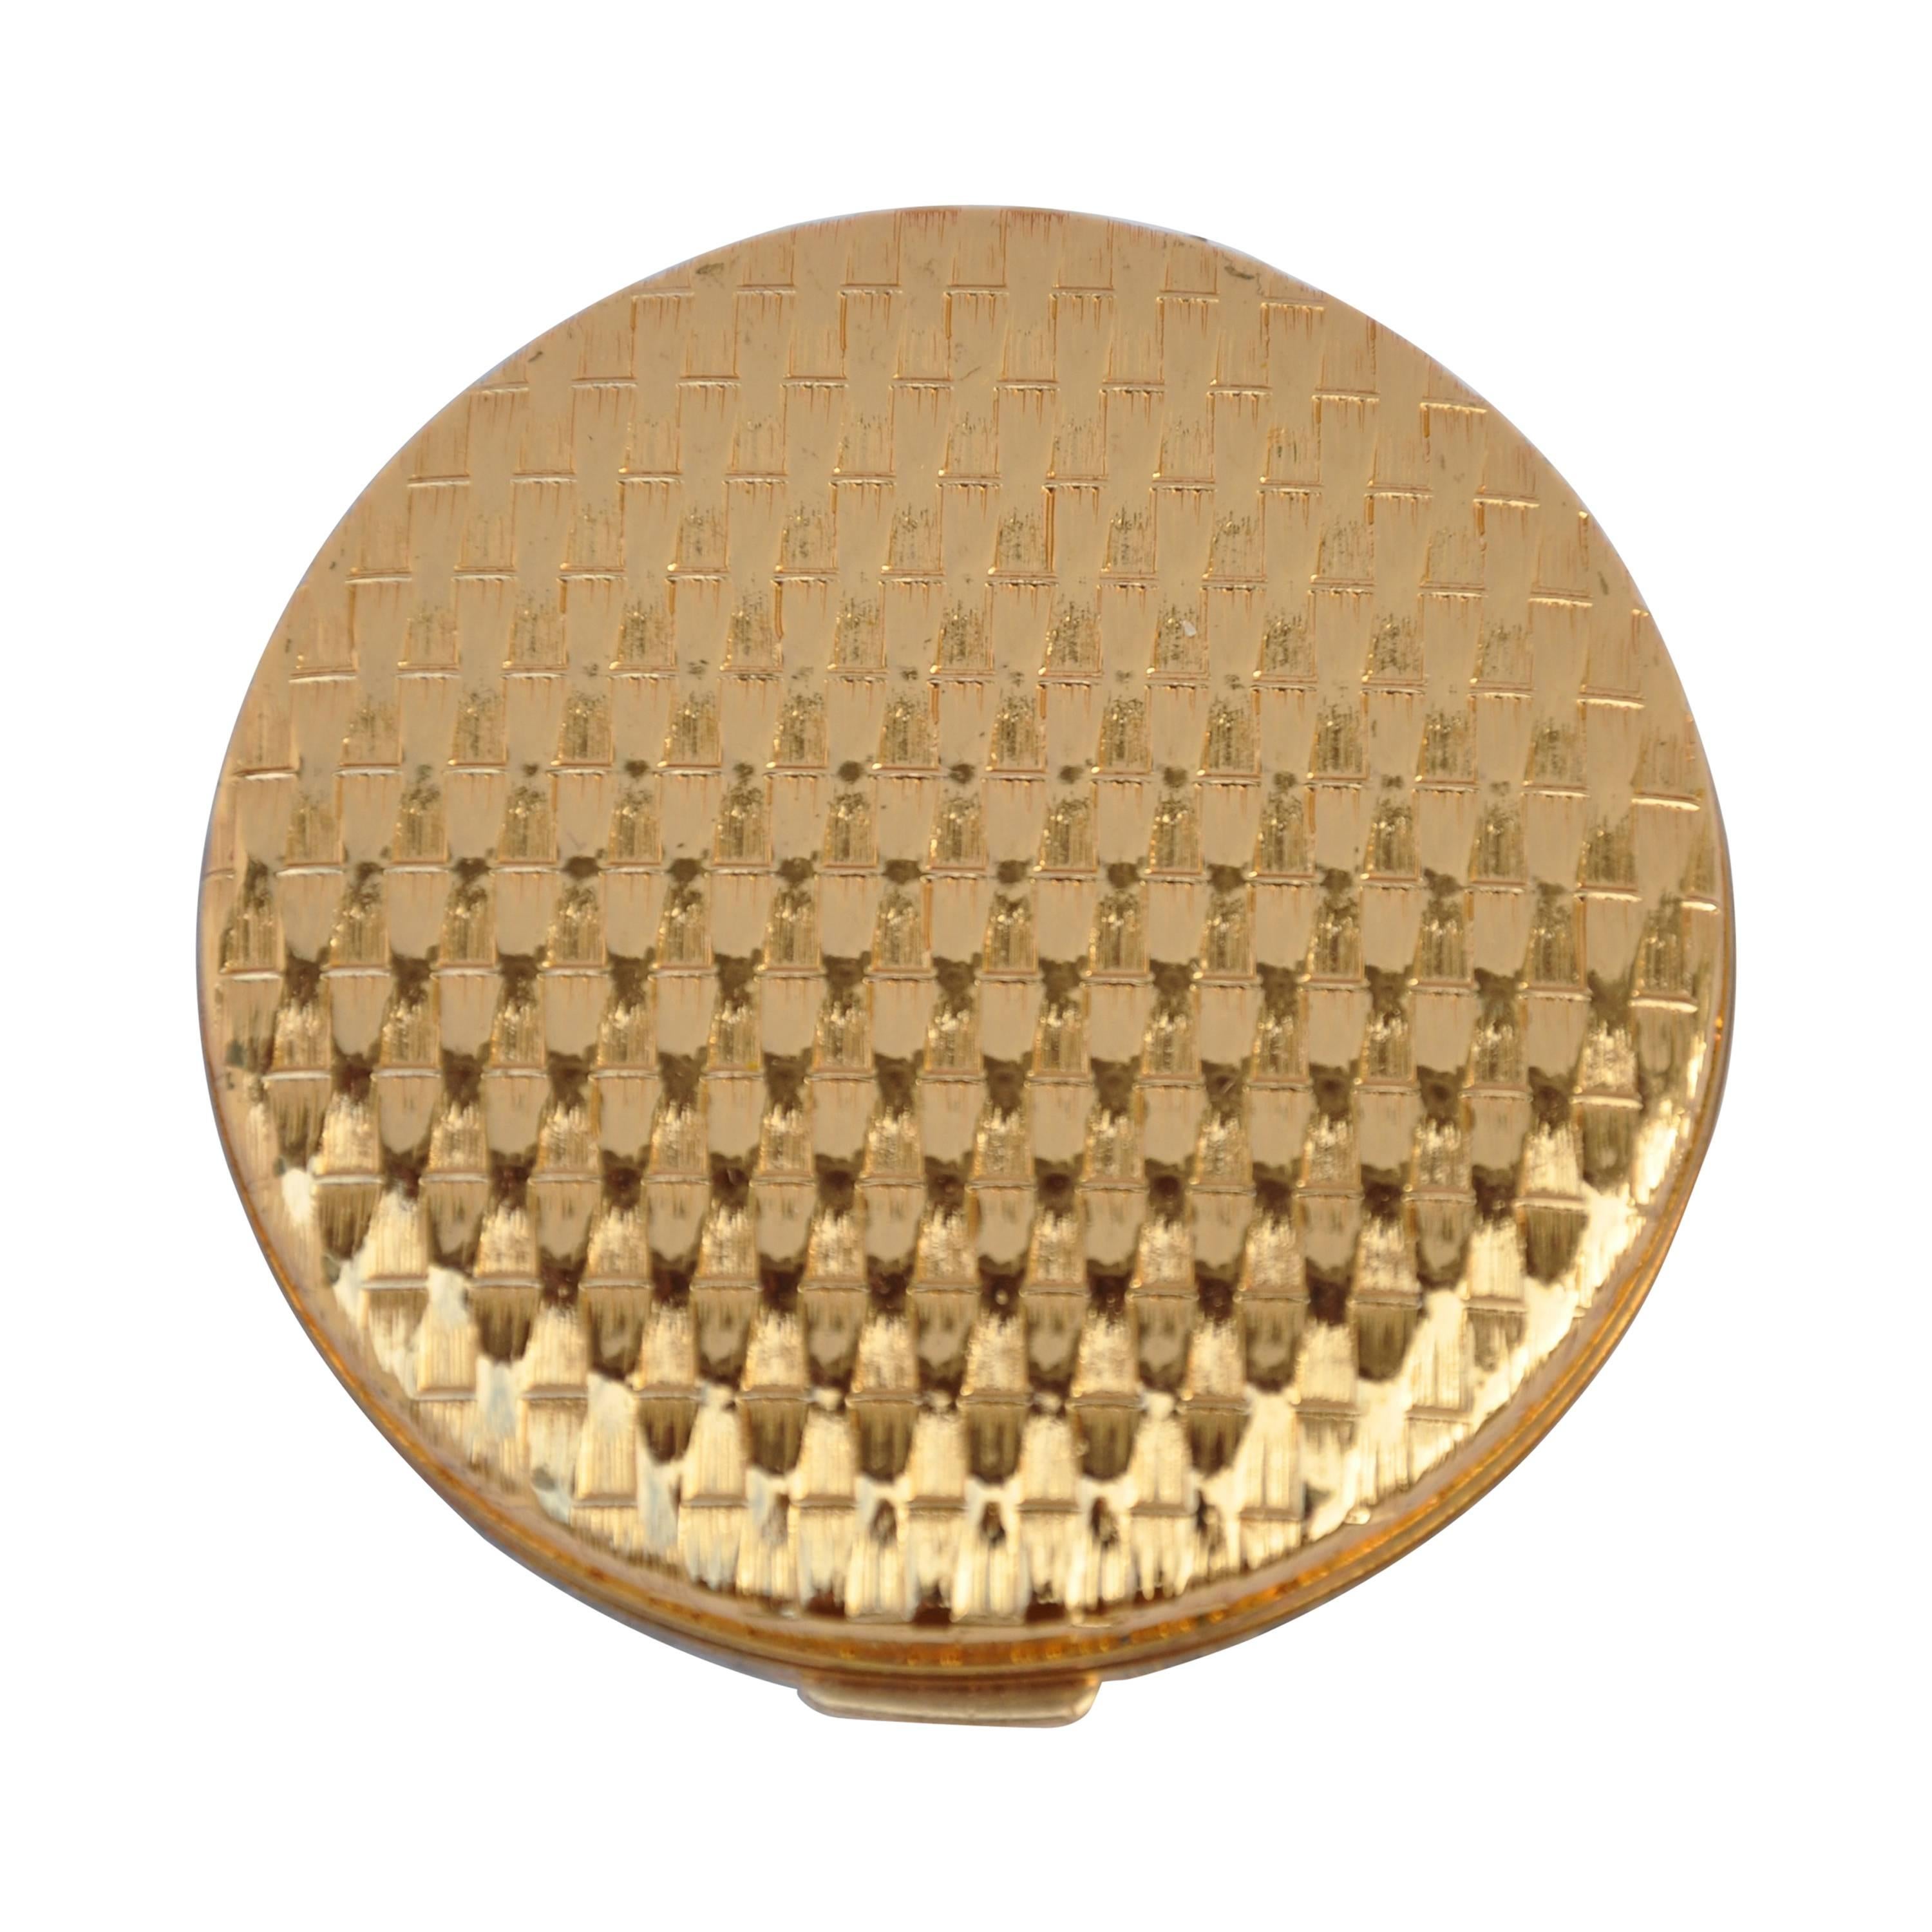 Elizabeth Arden Gilded Gold "Basket Weave" Compact For Sale